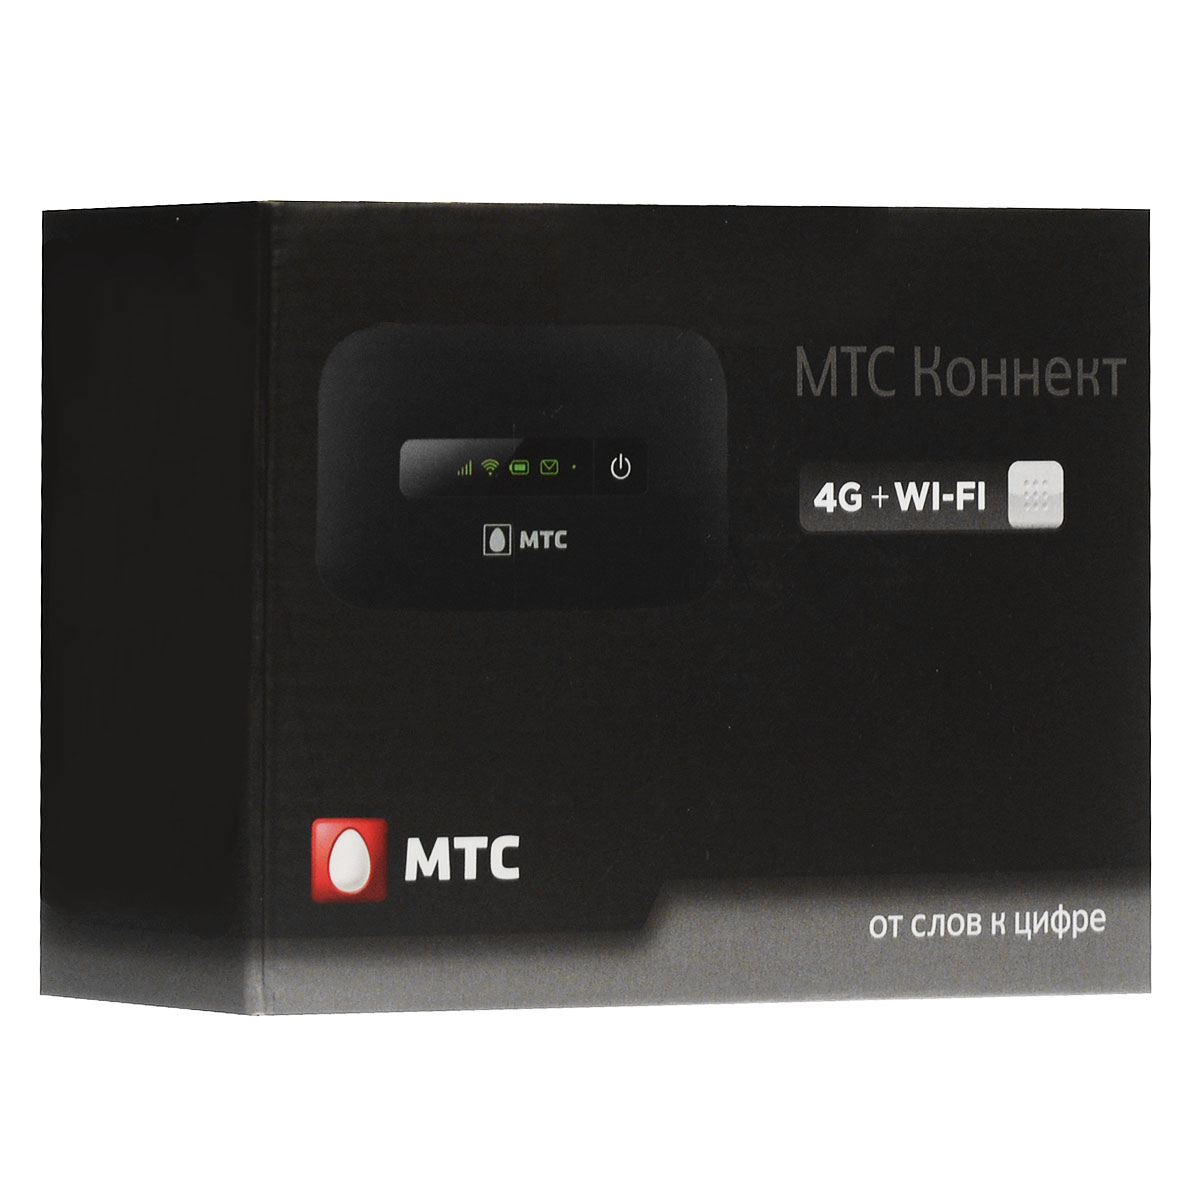 C4 connect. Роутер МТС для домашнего интернета. МТС Коннект 4g. МТС роутер комплект. Коннект-4"+CPE LTE Wi-Fi роутер.